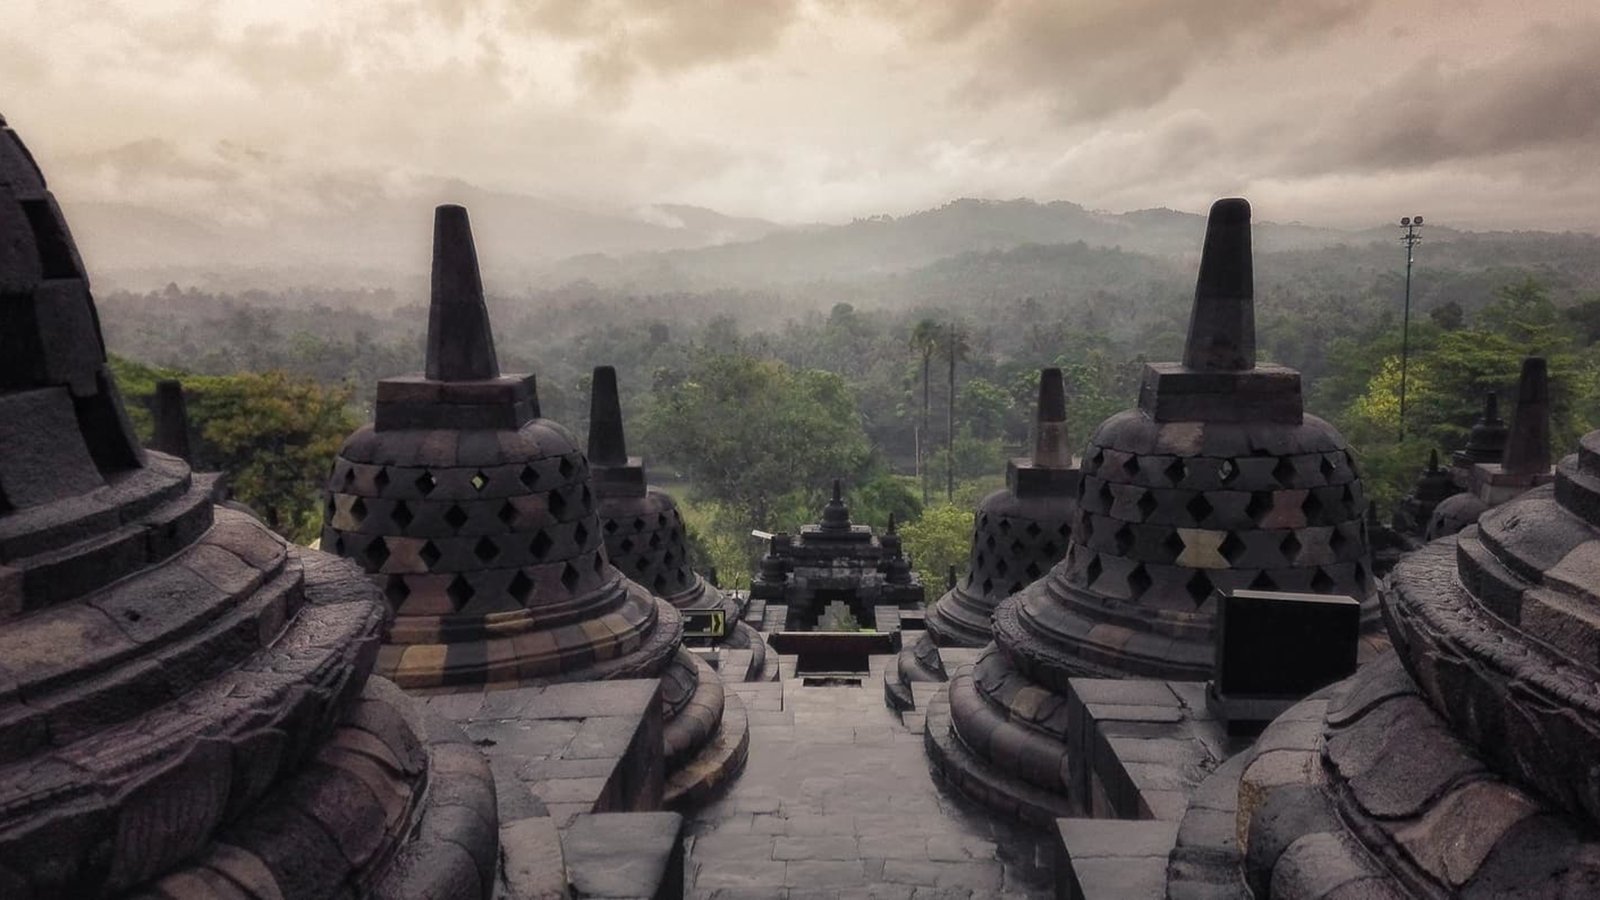 Paket Wisata Borobudur Dan Prambanan